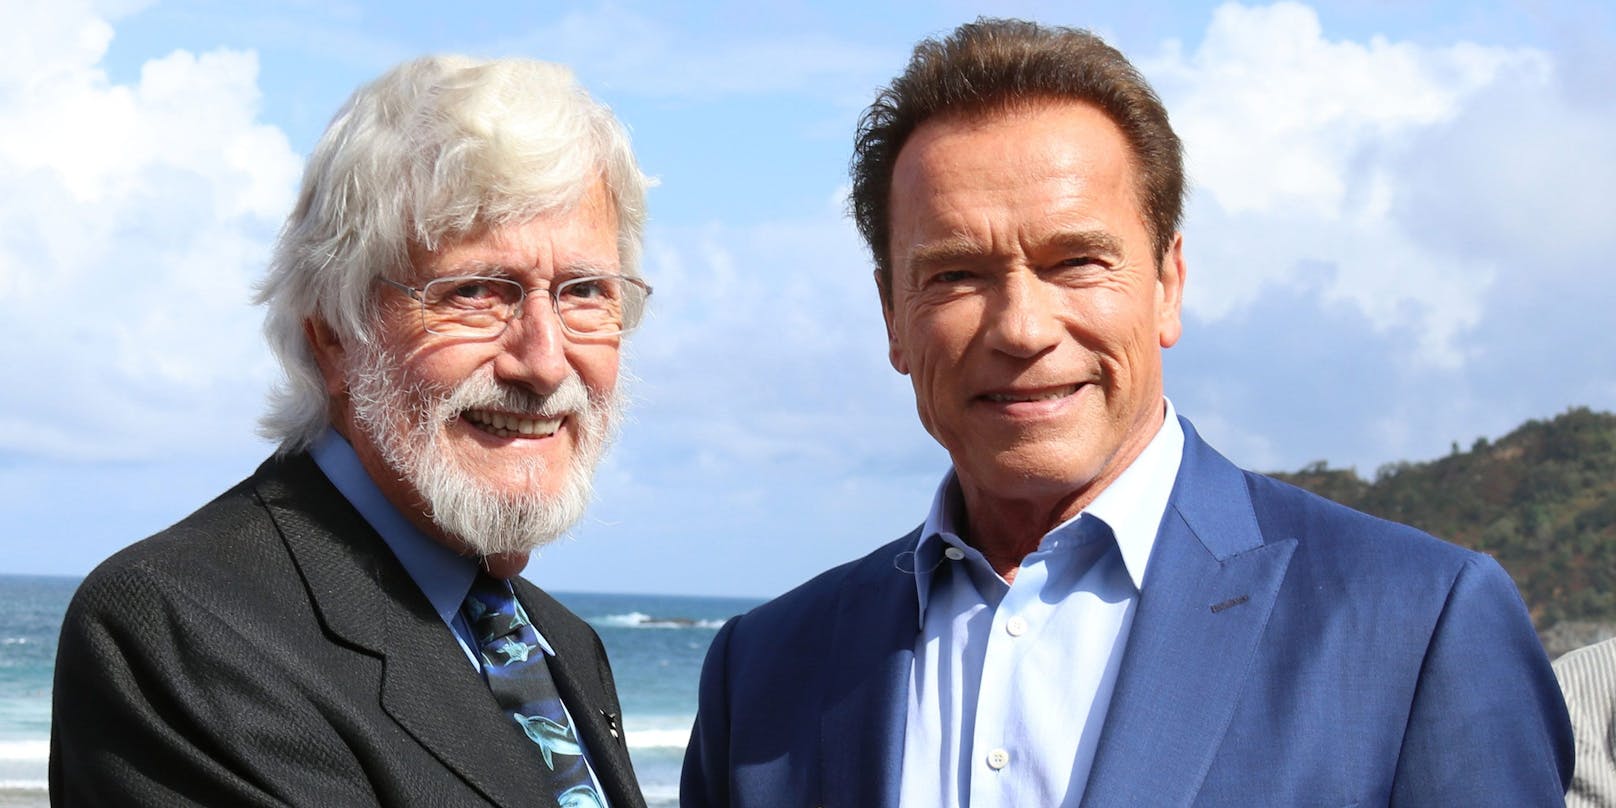 Jean-Michel Cousteau (83) und Arnold Schwarzenegger (74)